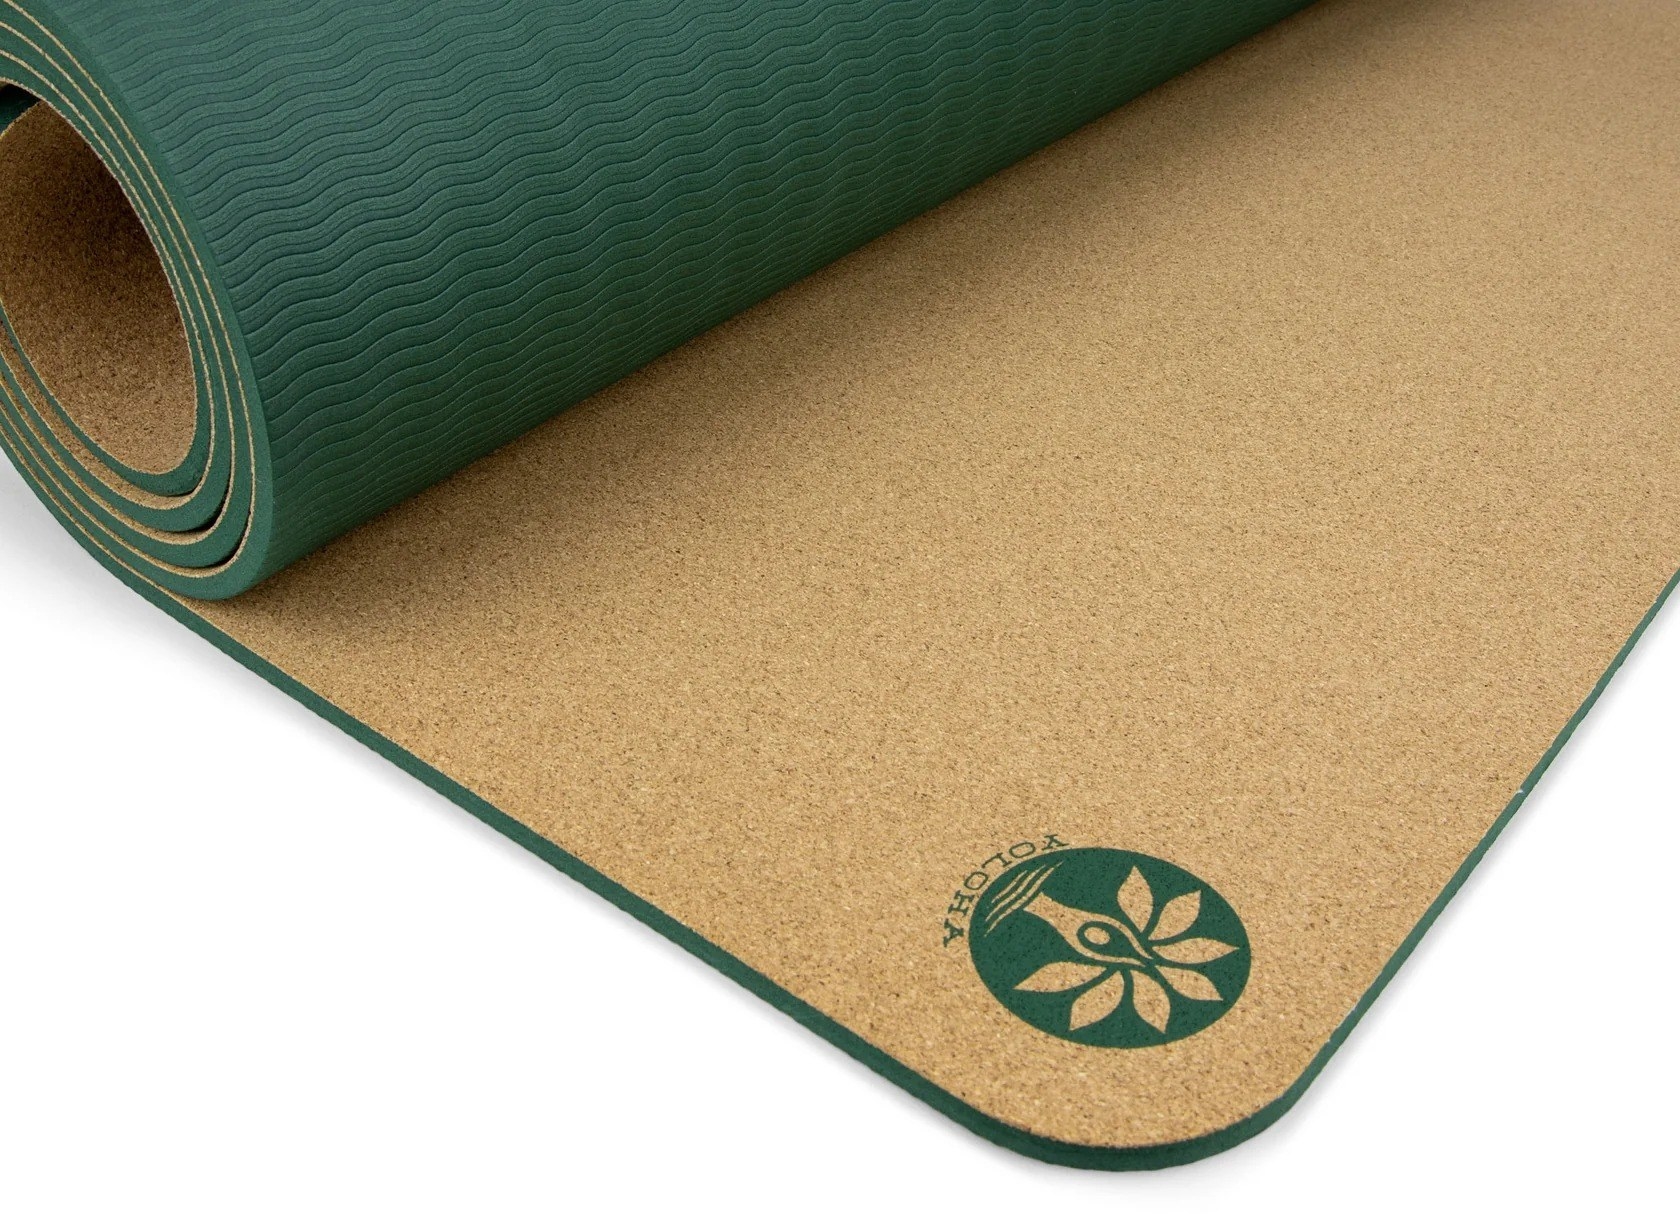 the green bio-based cork yoga mat